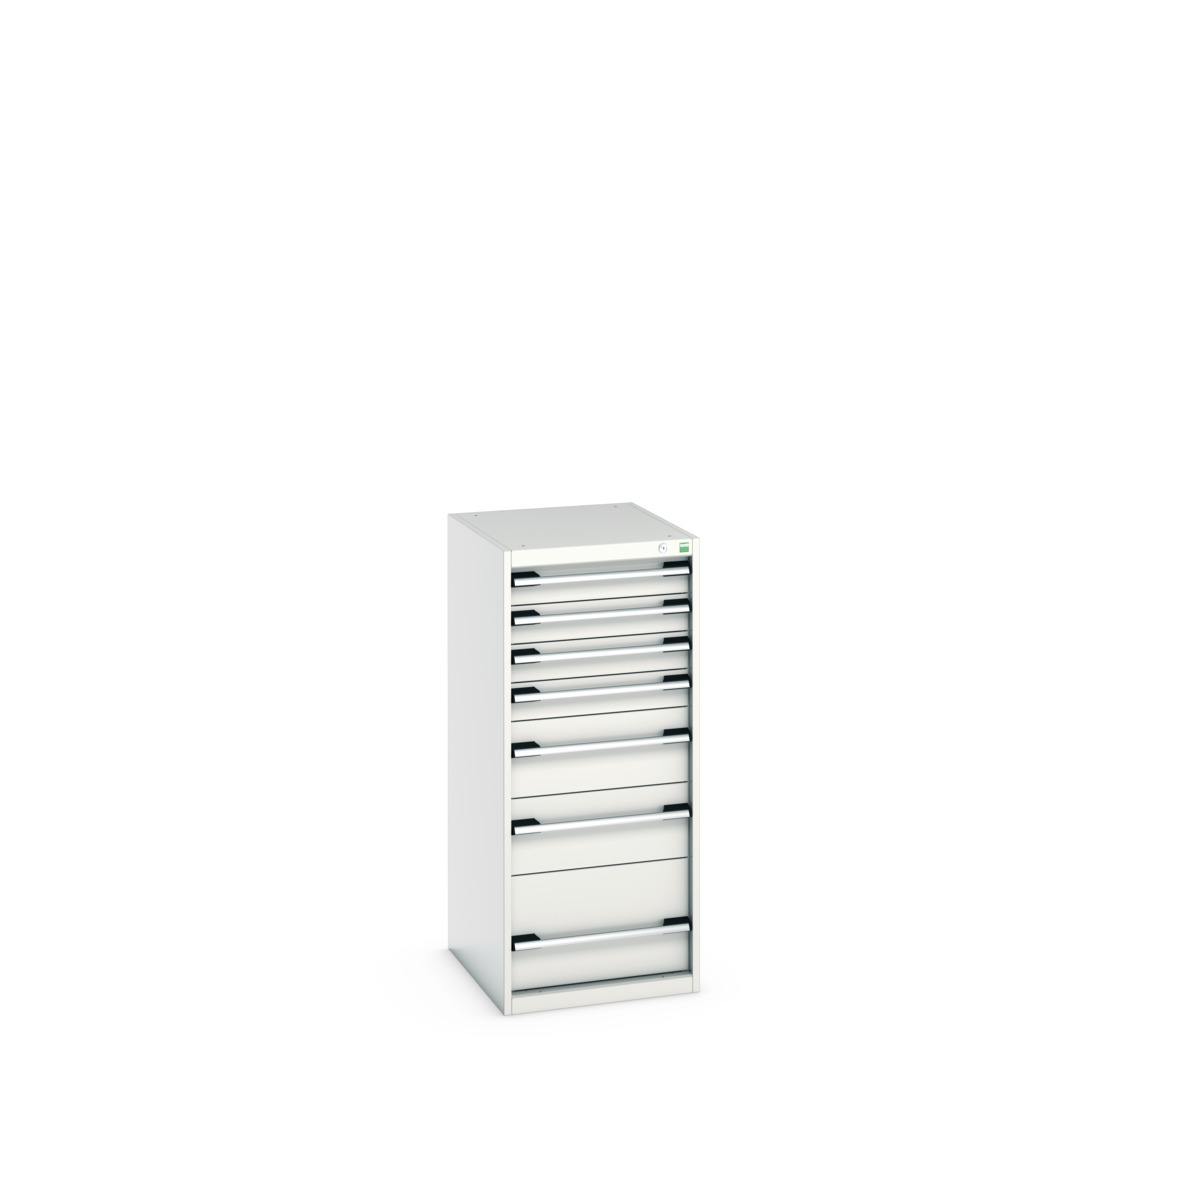 40018067.16V - cubio drawer cabinet